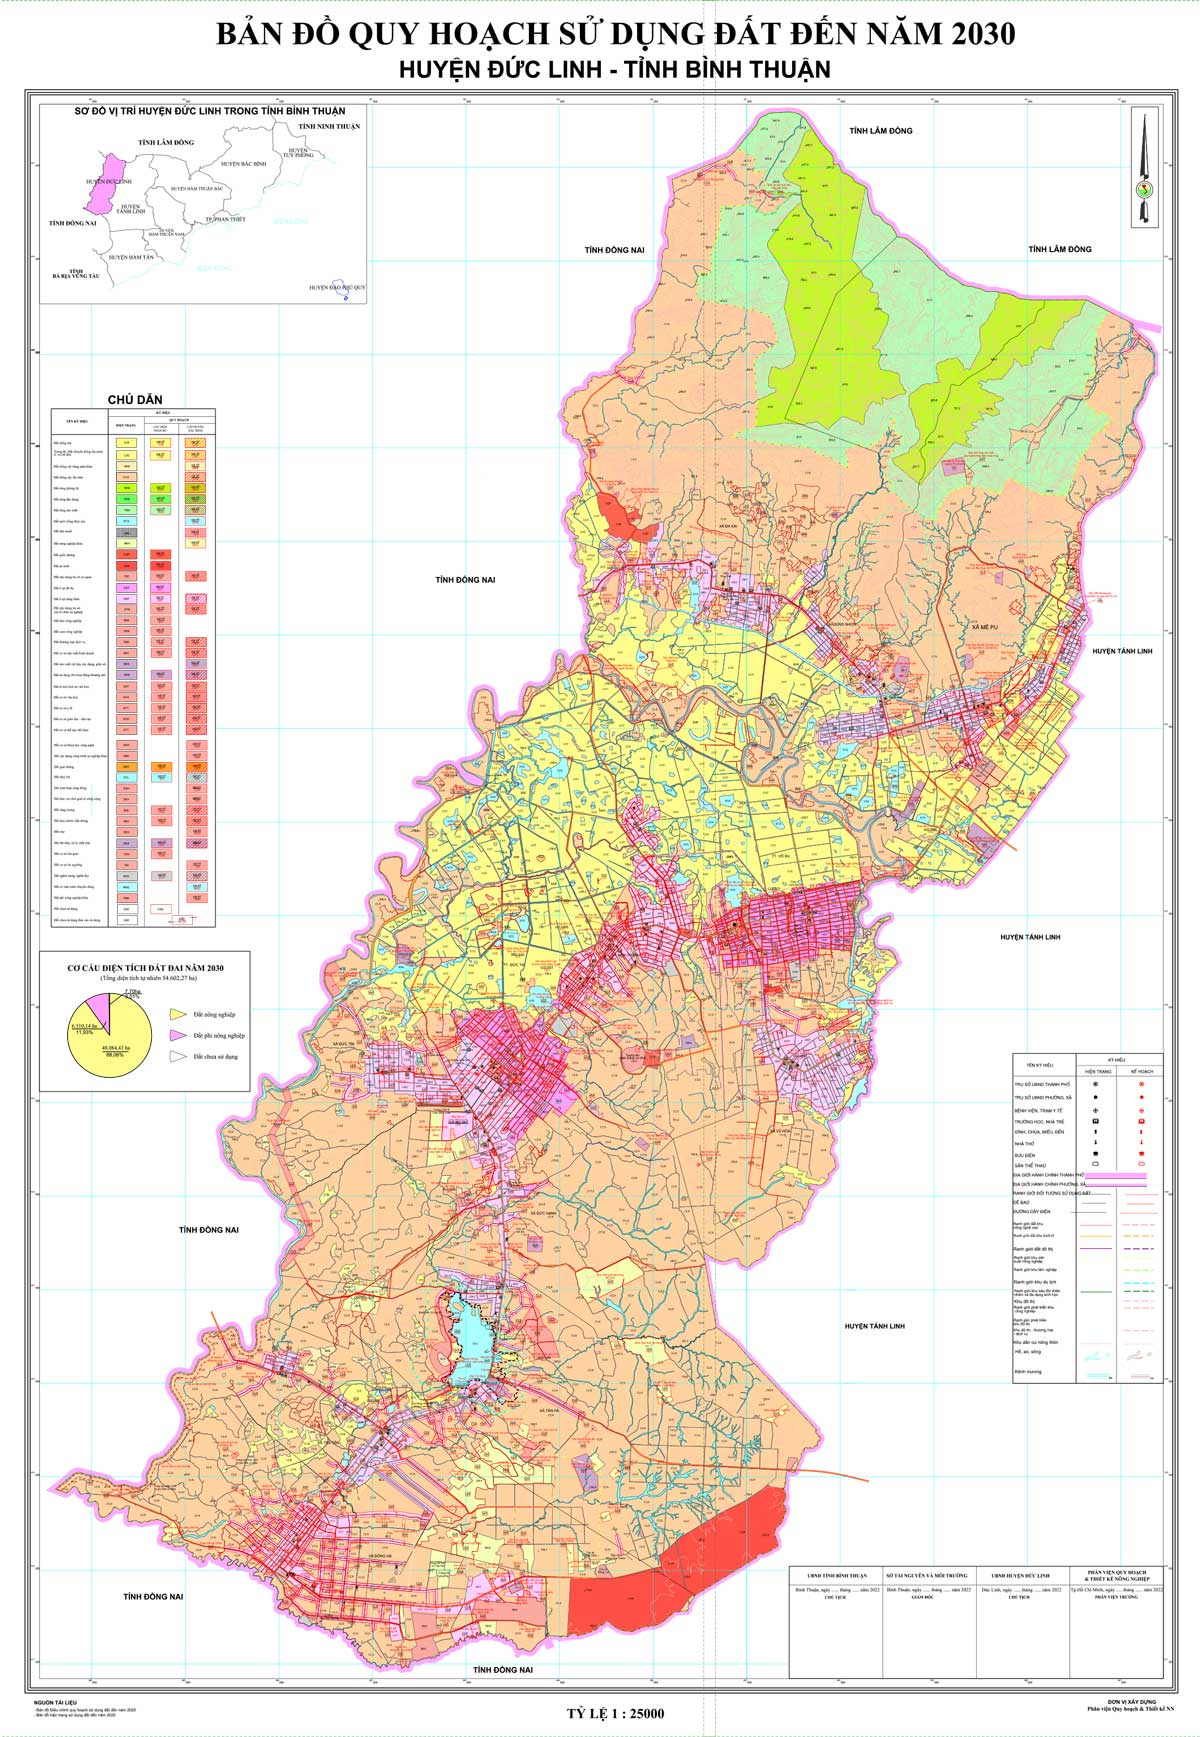 Bản đồ QHSDĐ huyện Đức Linh đến năm 2030 (đã duyệt)